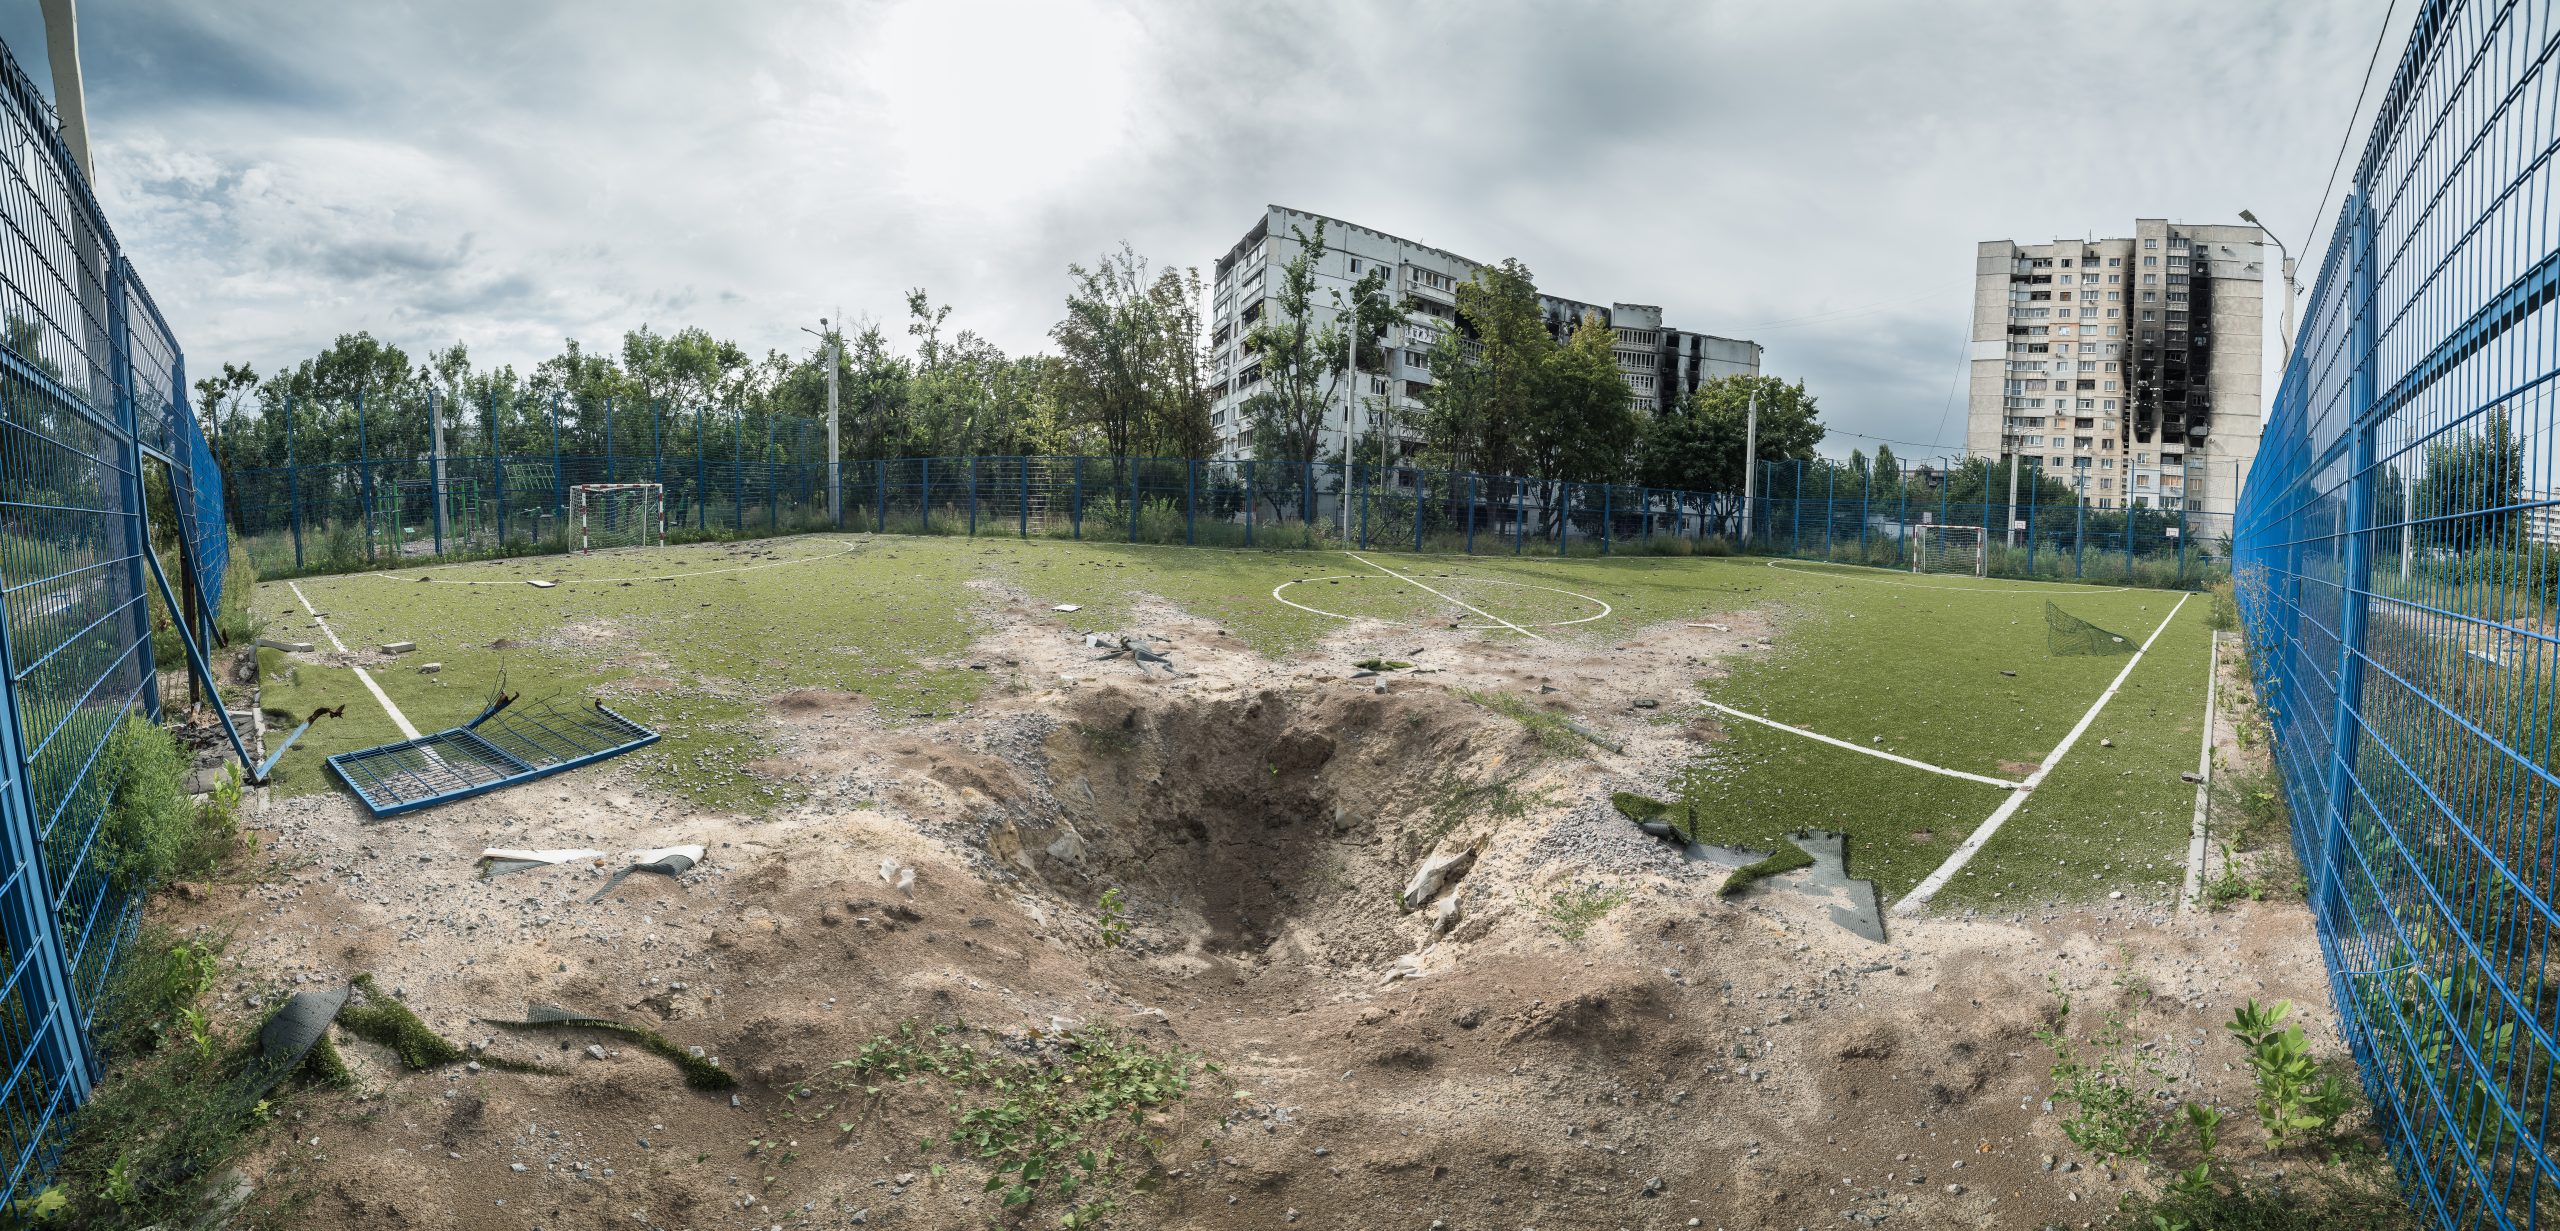 Вирва на футбольному полі і зруйновані будинки на Північній Салтівці.